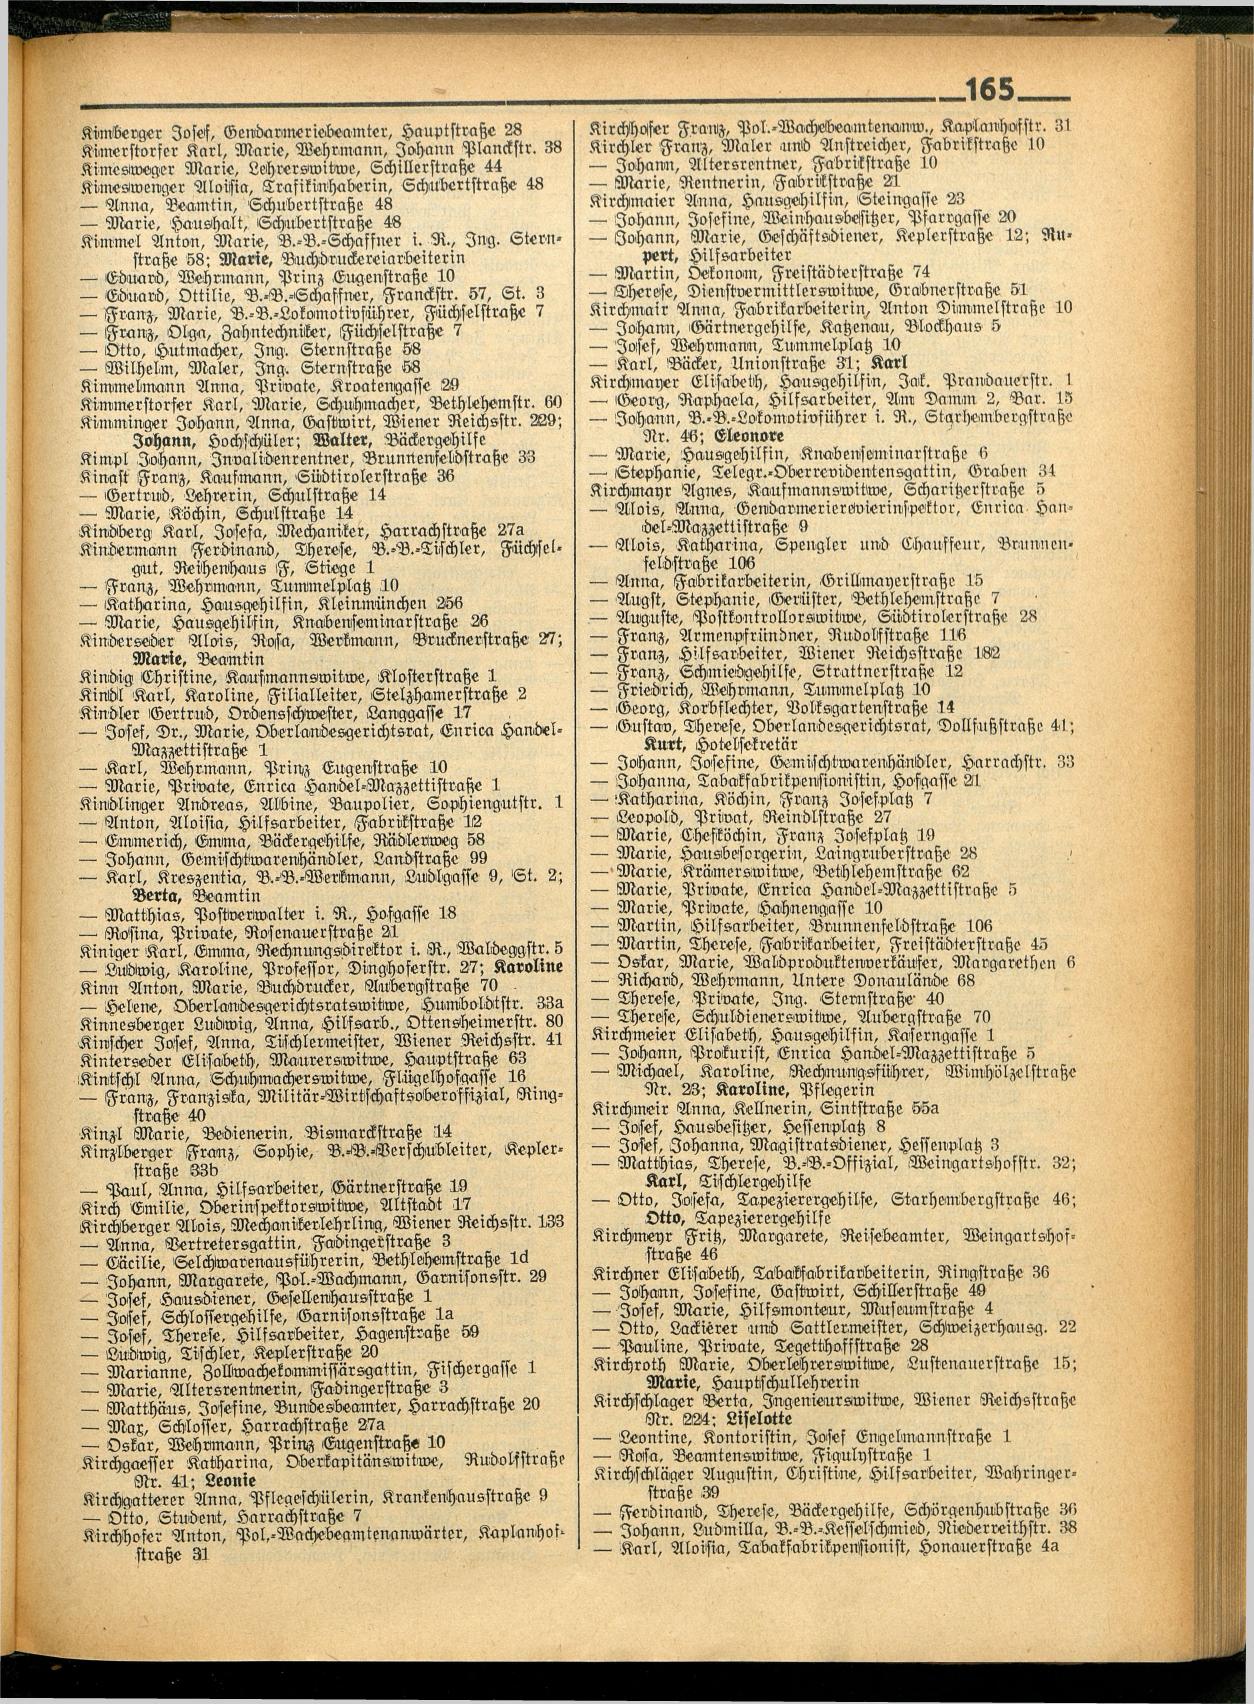 Amtliches Linzer Adreßbuch 1936 - Seite 299